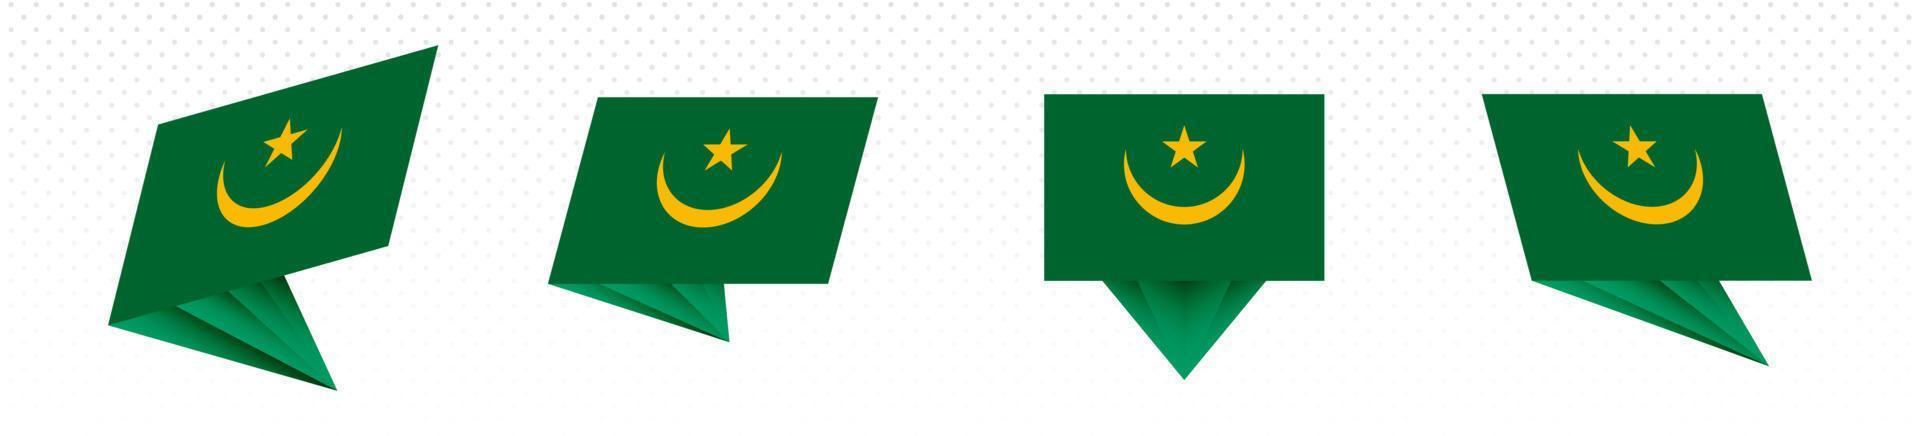 drapeau de la mauritanie au design abstrait moderne, ensemble de drapeaux. vecteur